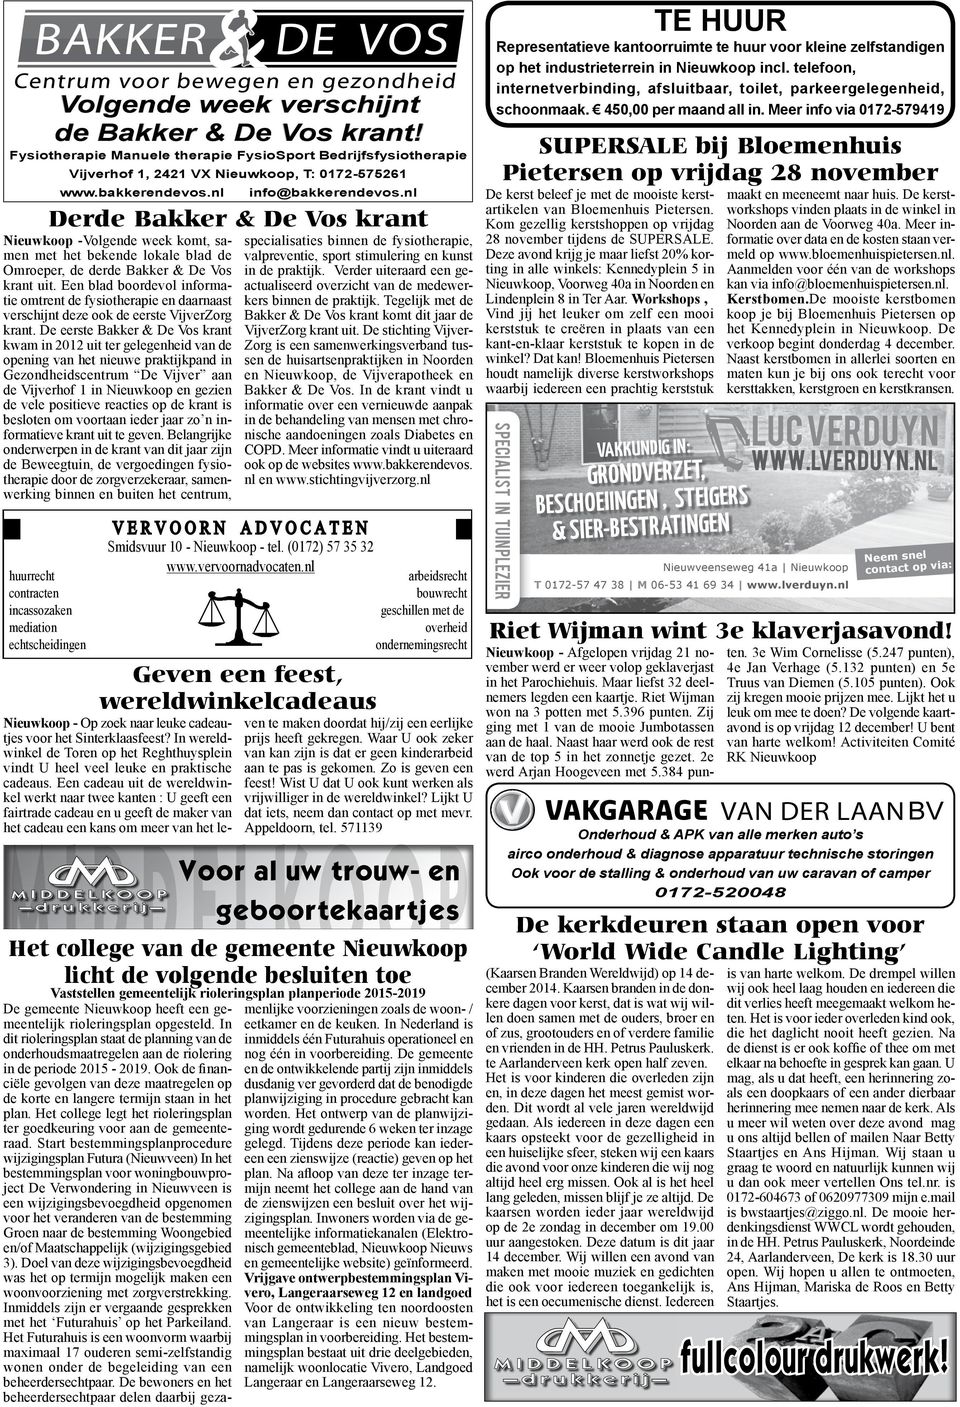 nl info@bakkerendevos.nl Derde Bakker & De Vos krant Nieuwkoop -Volgende week komt, samen met het bekende lokale blad de Omroeper, de derde Bakker & De Vos krant uit.